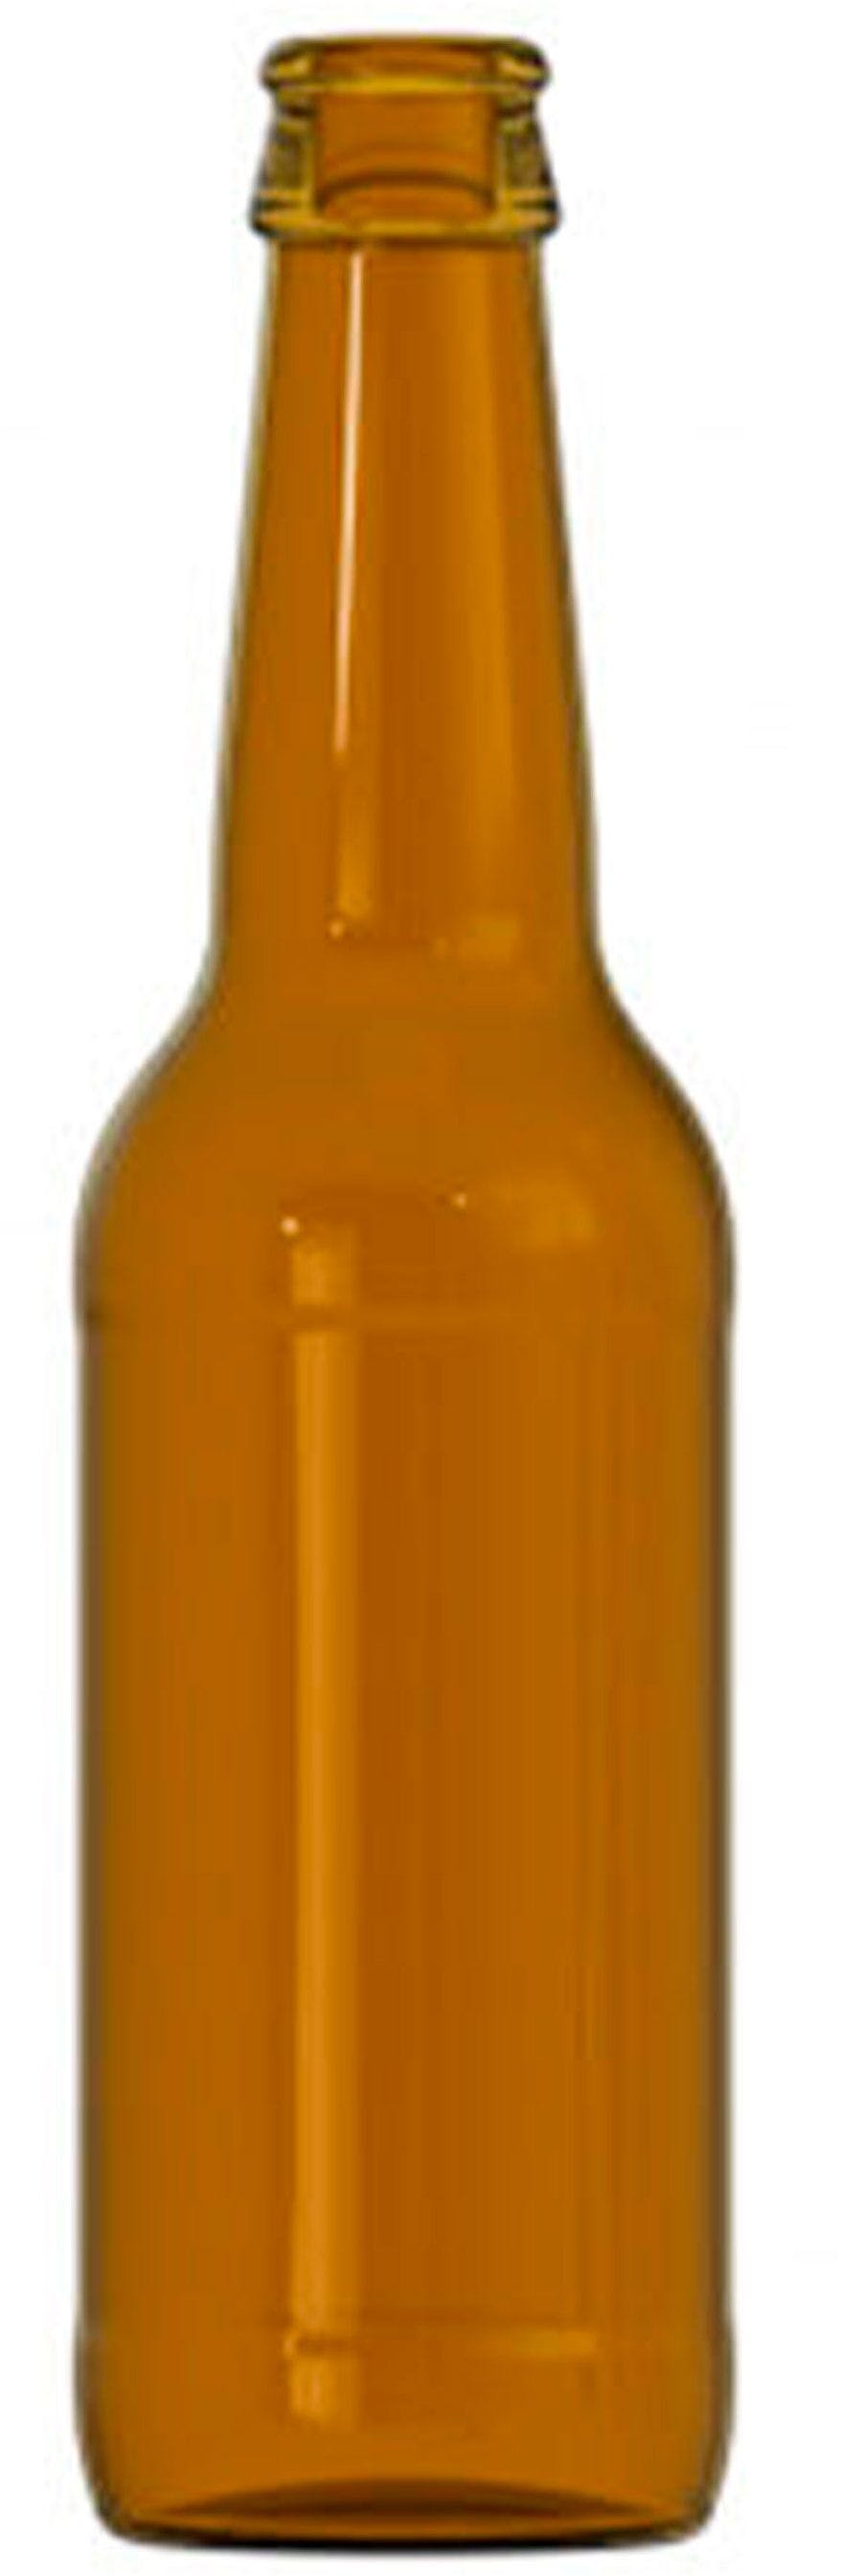 Bottle BIRRA  LONG NECK 330 ml Crown 26